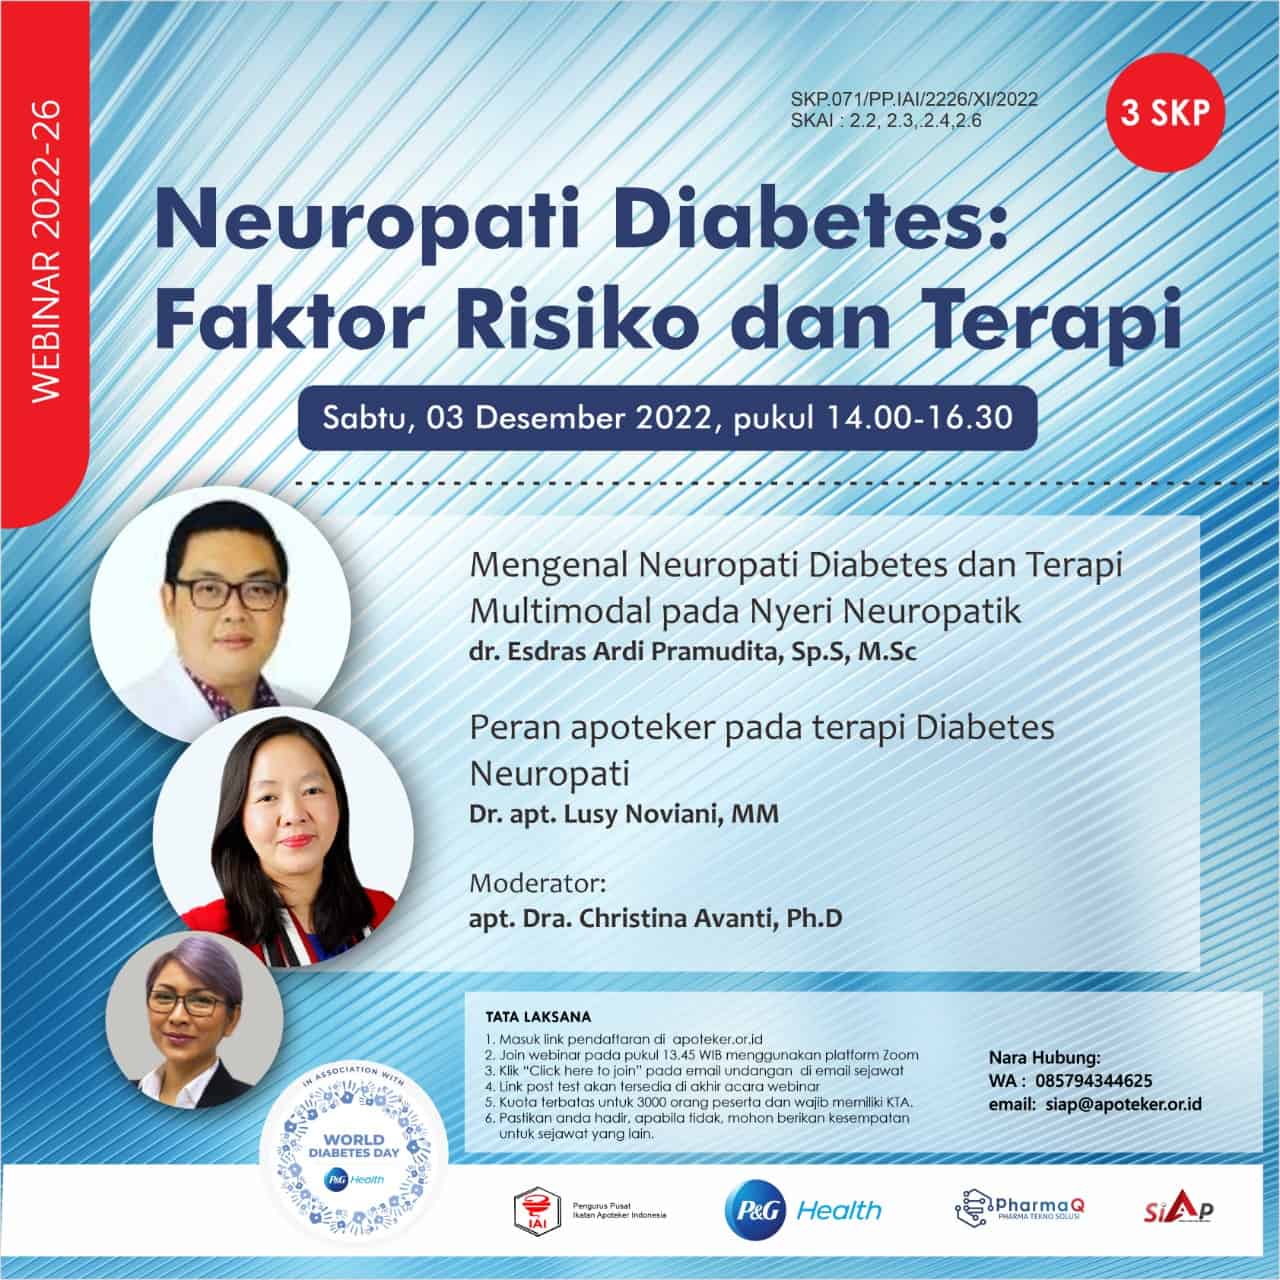 Neuropati Diabetes: Faktor Risiko dan Terapi